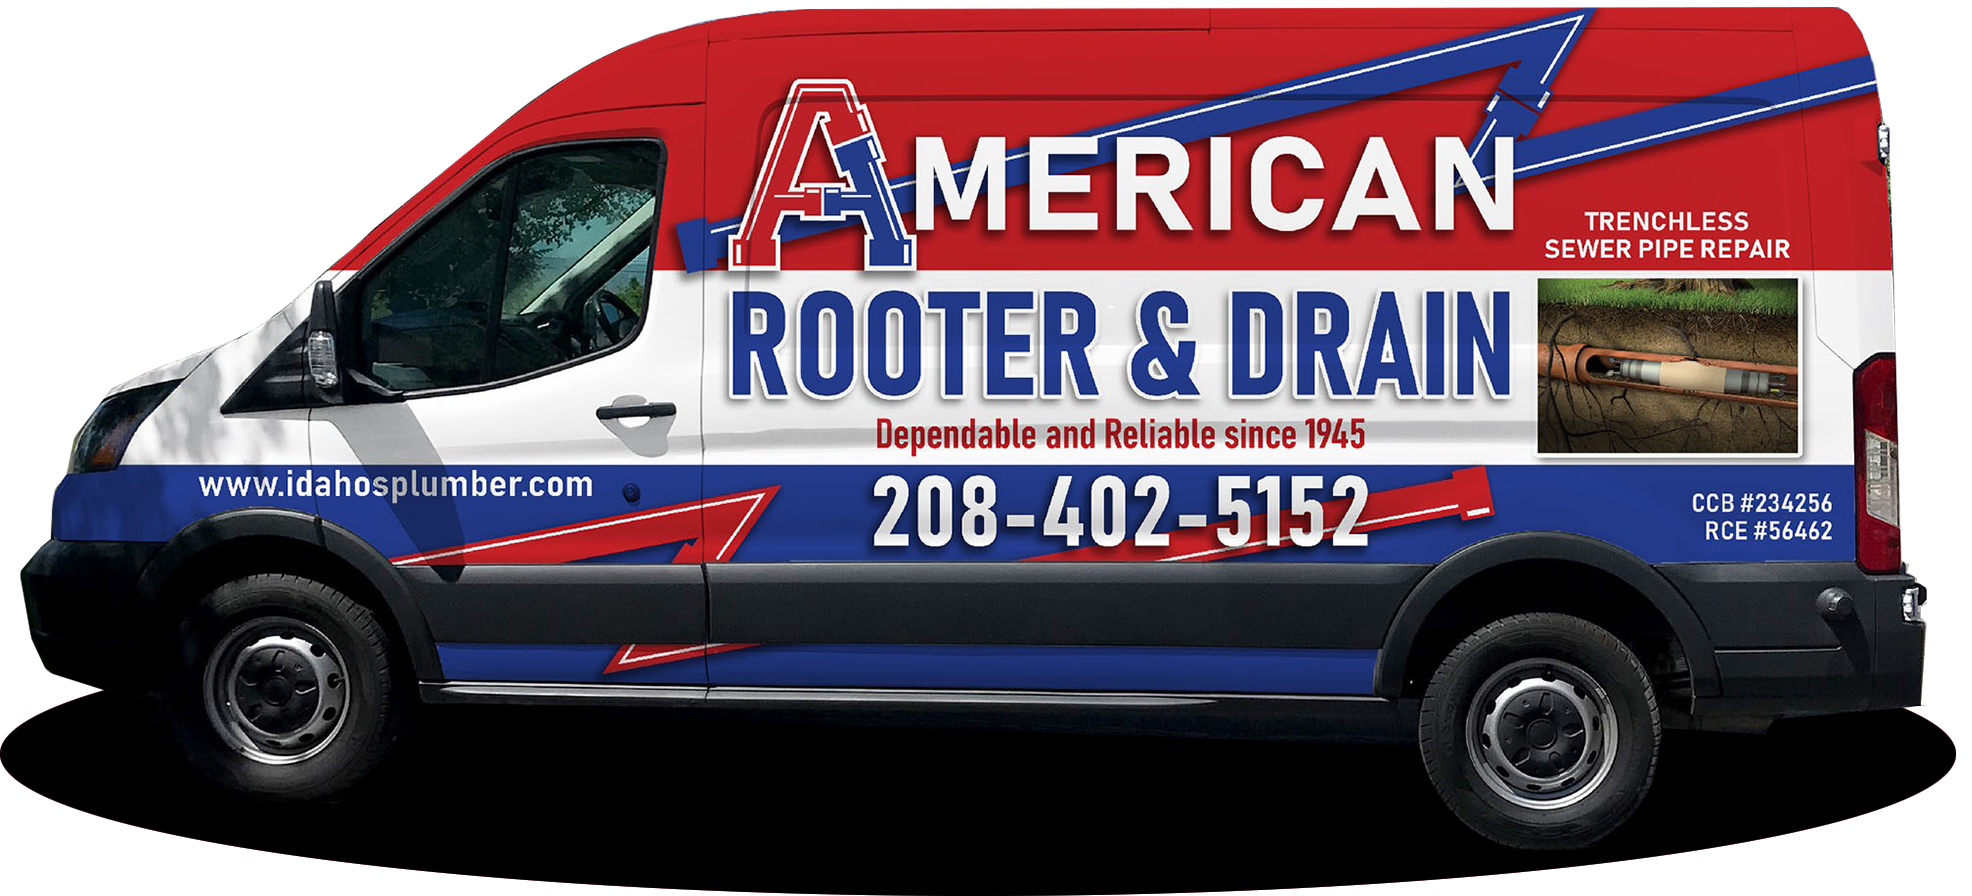 American Rooter & Drain branded van